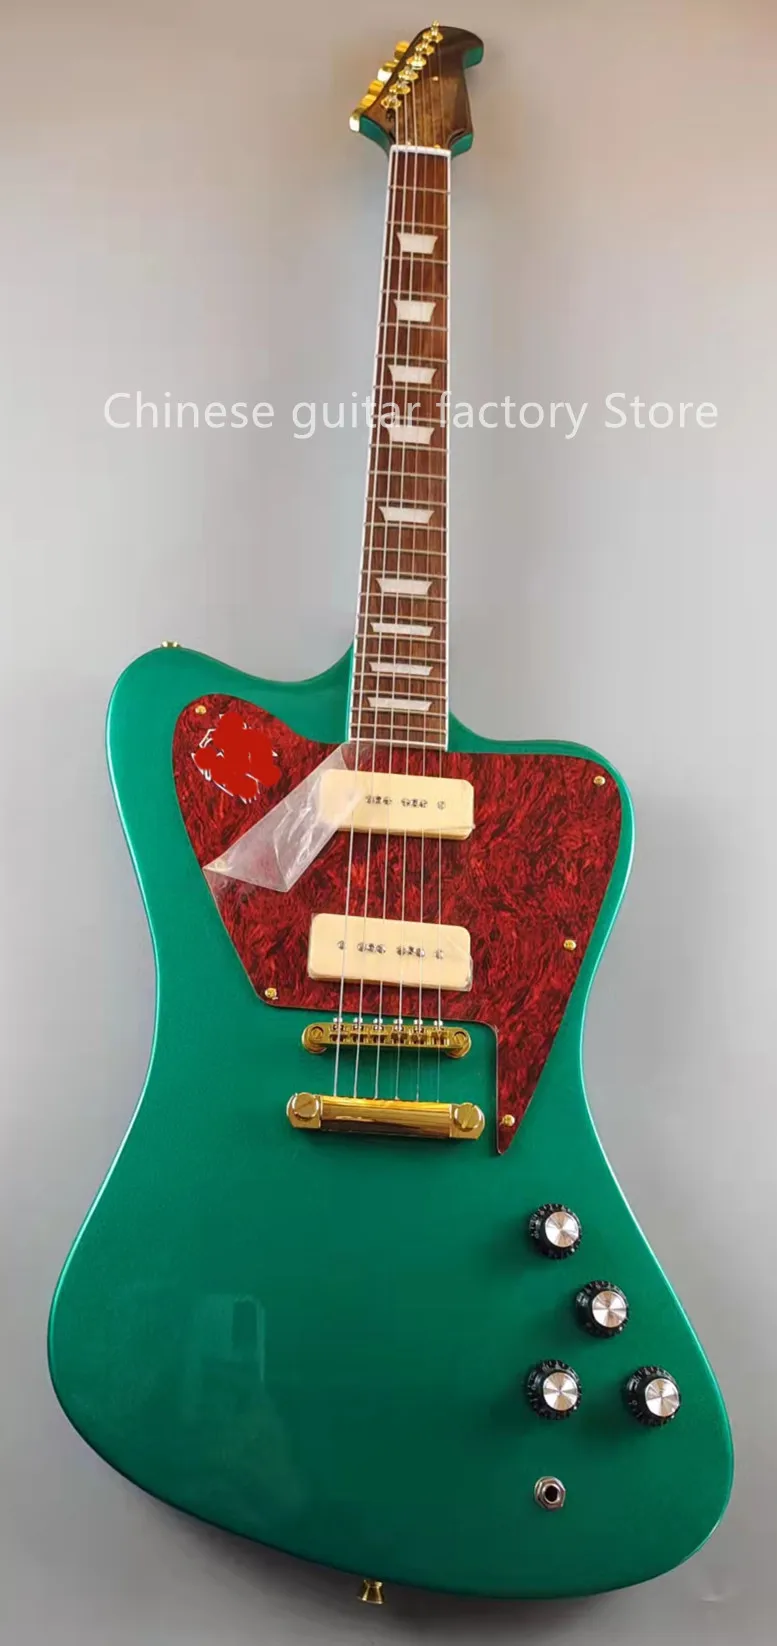 Kabels Firebird Electric Guitar Silvergreen knippert gouden accessoires P90 pickups mahonie body verkocht in voorraad gratis verzending fa